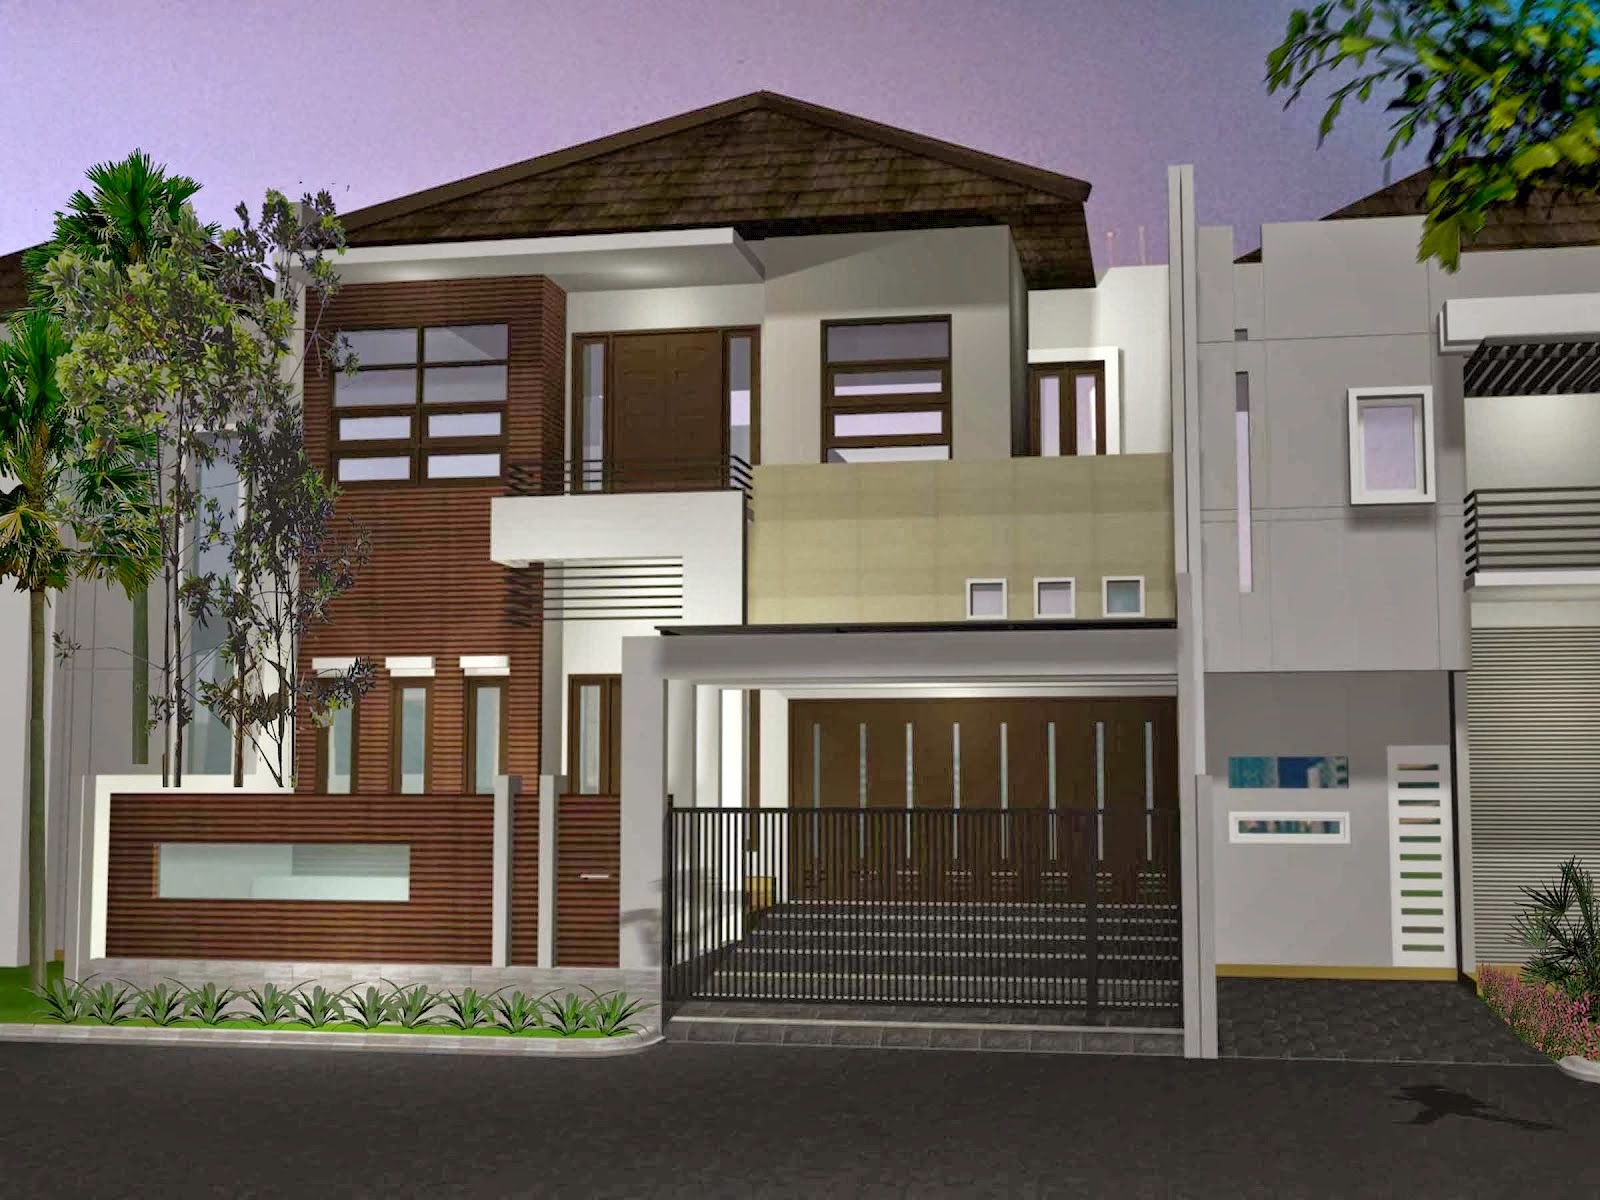 Gambar Desain Rumah Minimalis 2 Lantai Budget 200 Juta Wallpaper